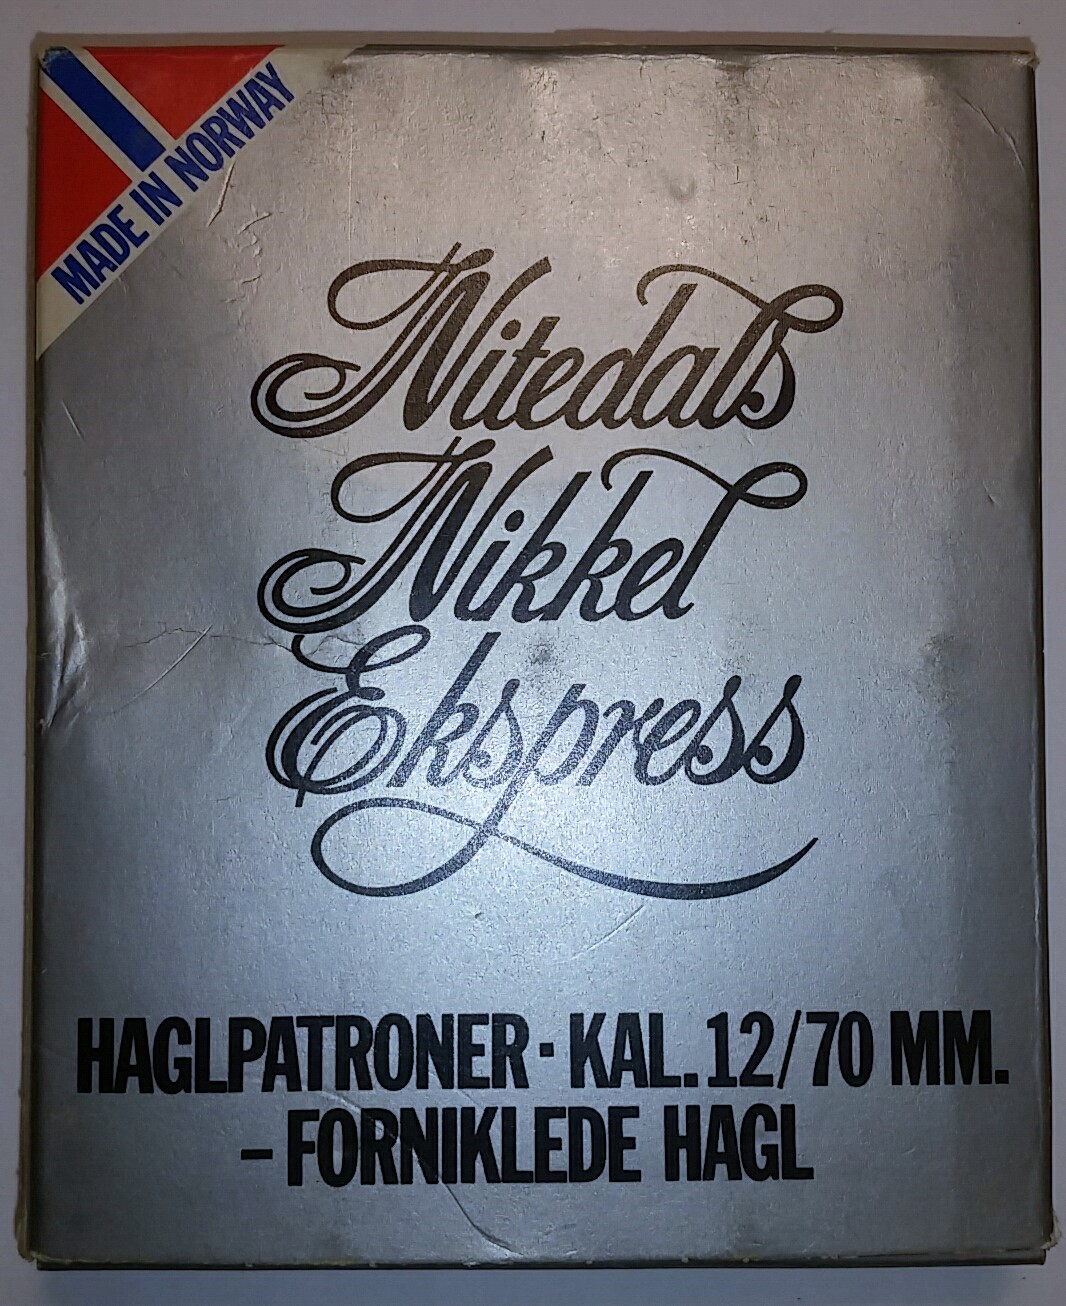 ./ammo/hagle/esker/Eske-Hagle-NormaNitedal-Nitedals-Nikkel-Ekspress-12-70-NrUS5-10skudd-1.jpg